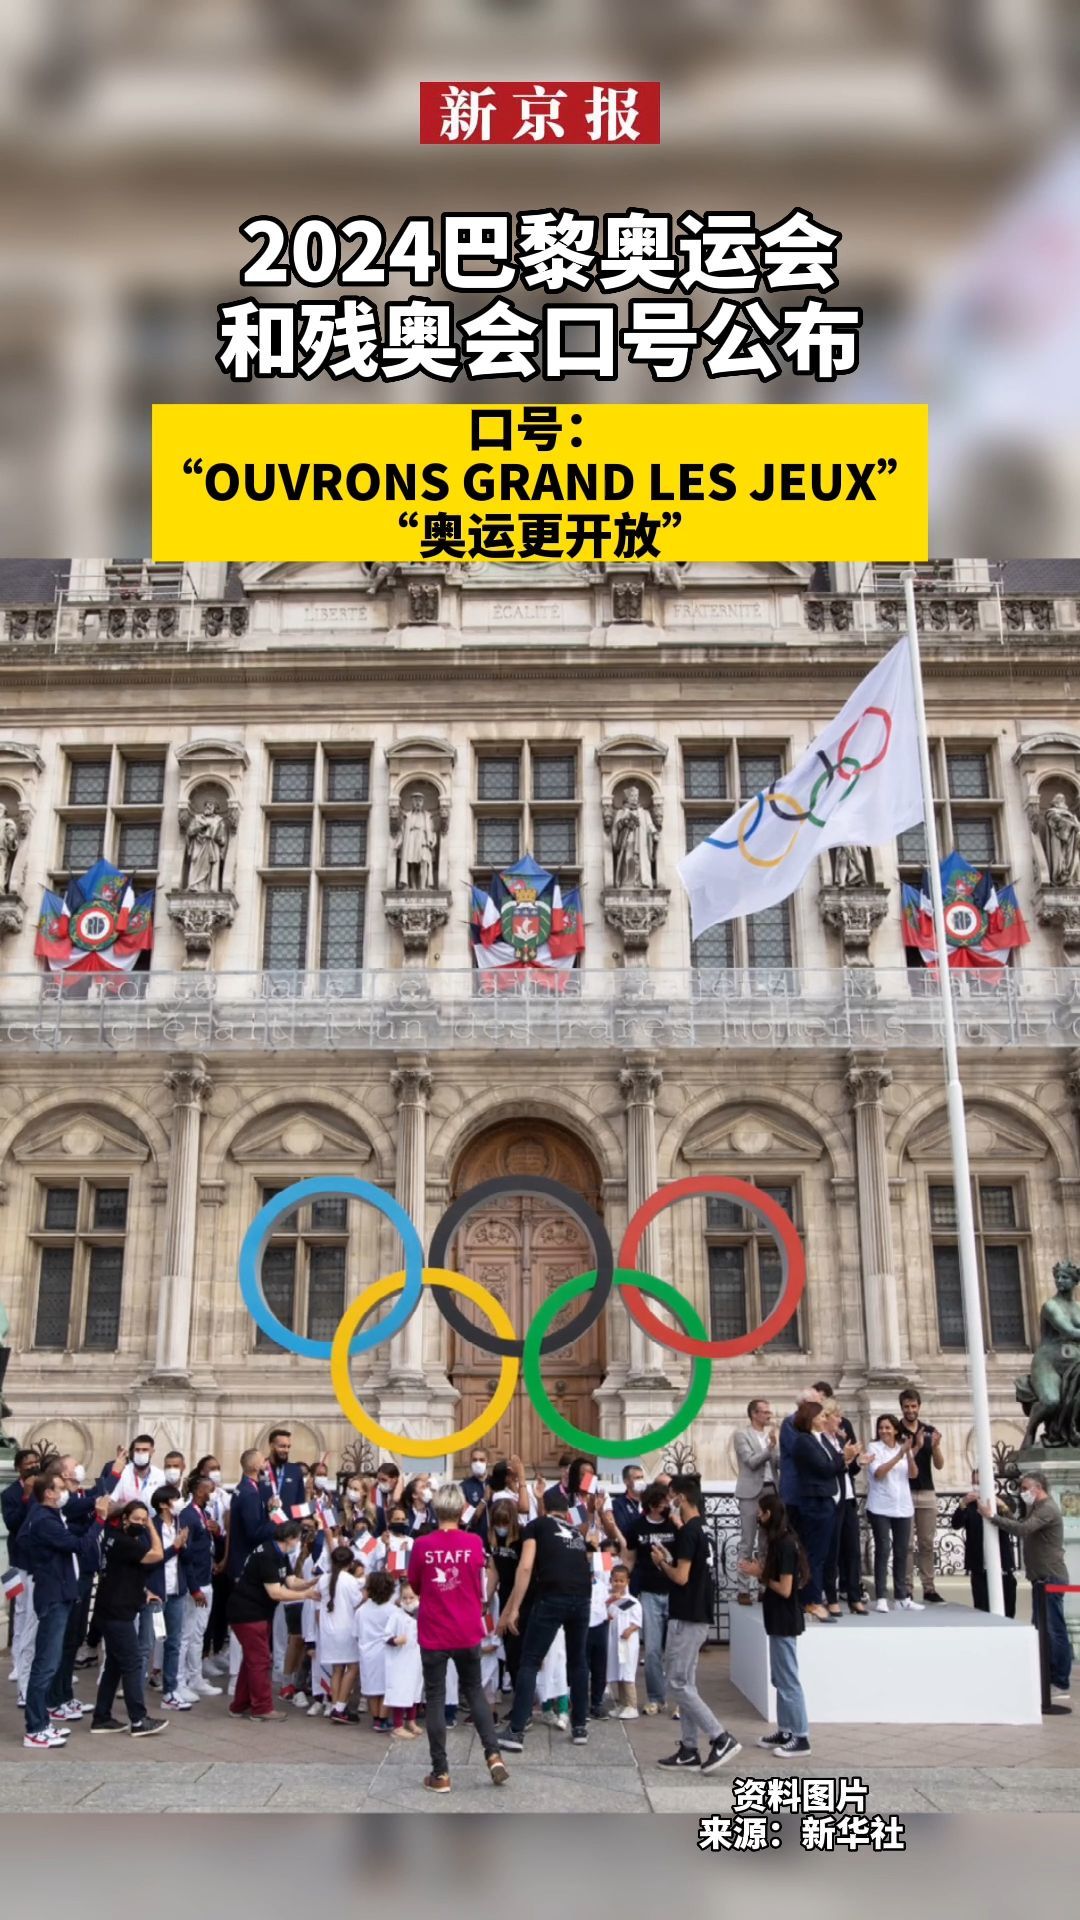 #2024巴黎奥运会和残奥会口号公布、口号：“OUVRONS GRAND LES JEUX”中文叫“奥运更开放”